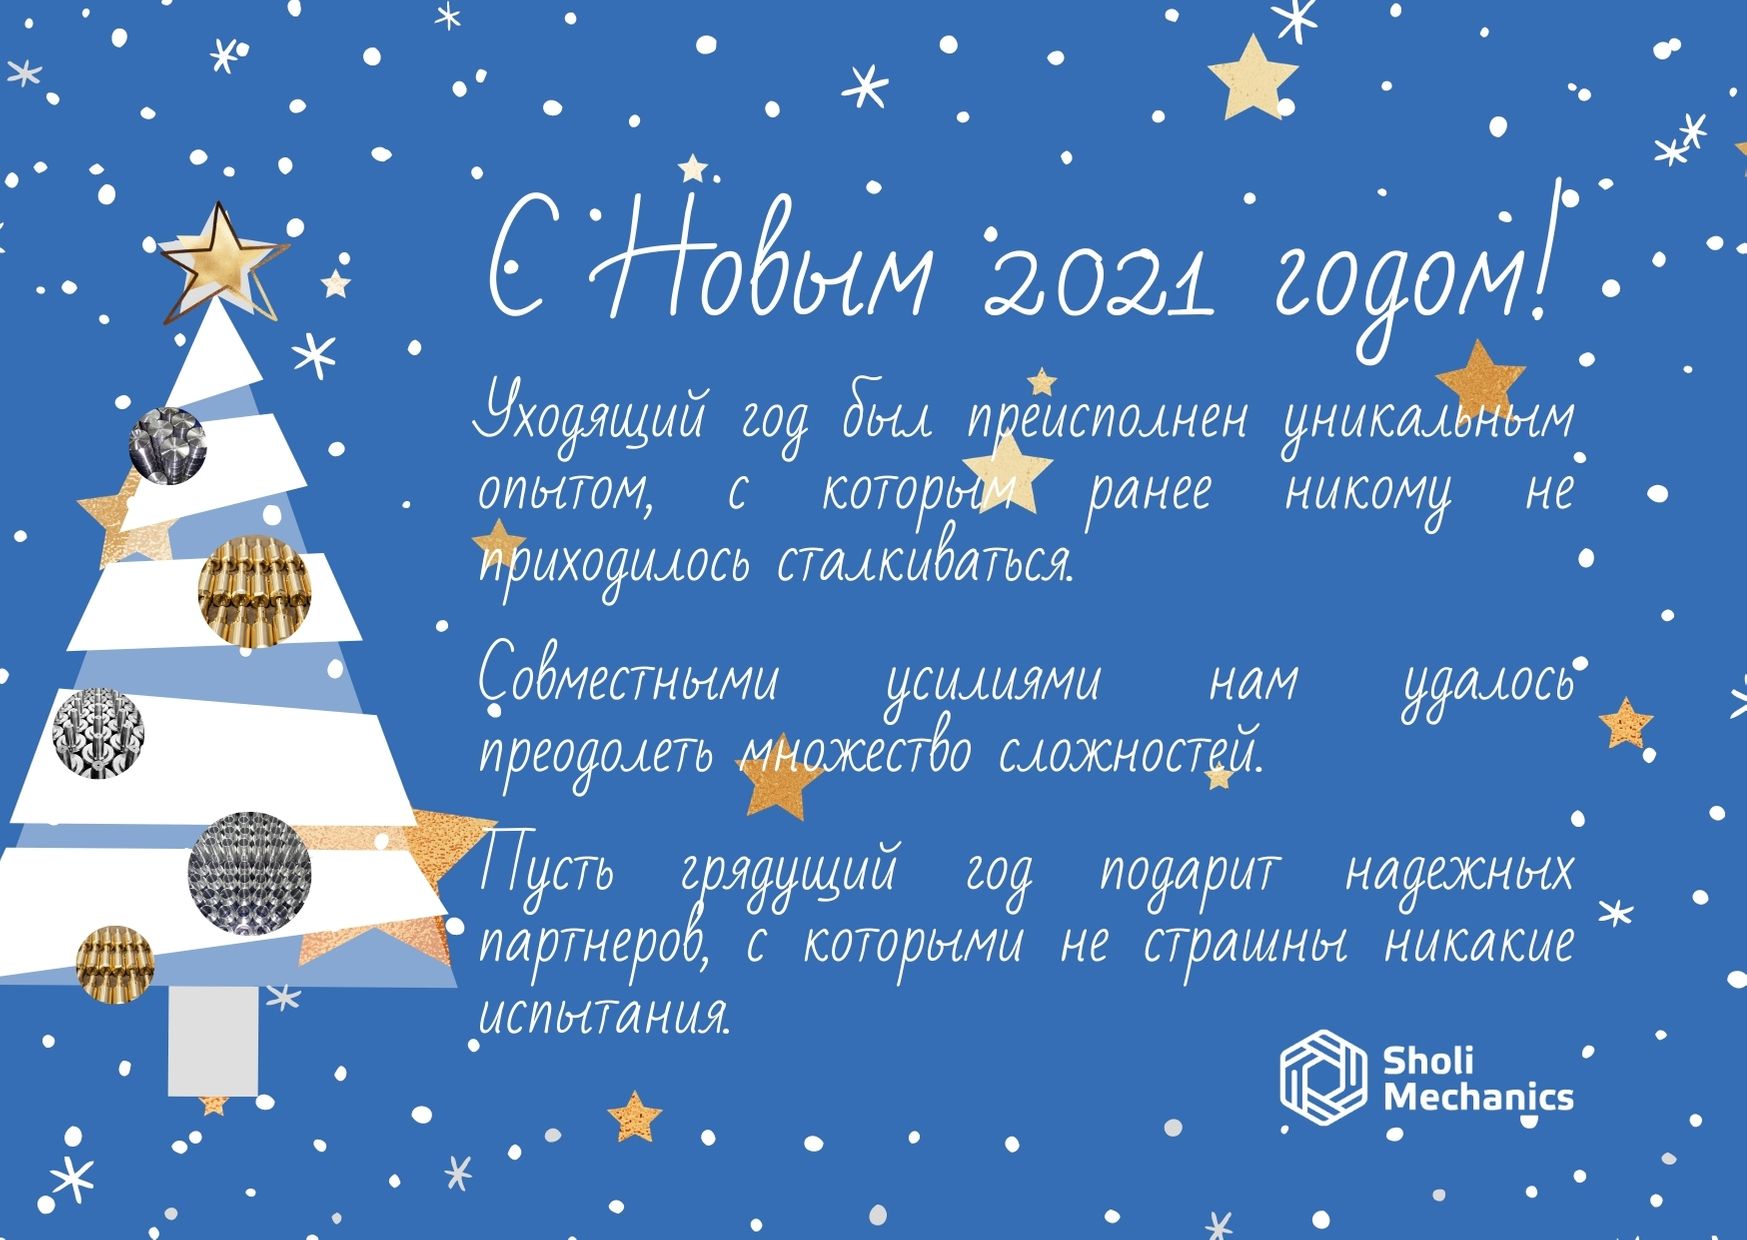 Компания «Шоли Механикс» поздравляет с Новым 2021 годом!